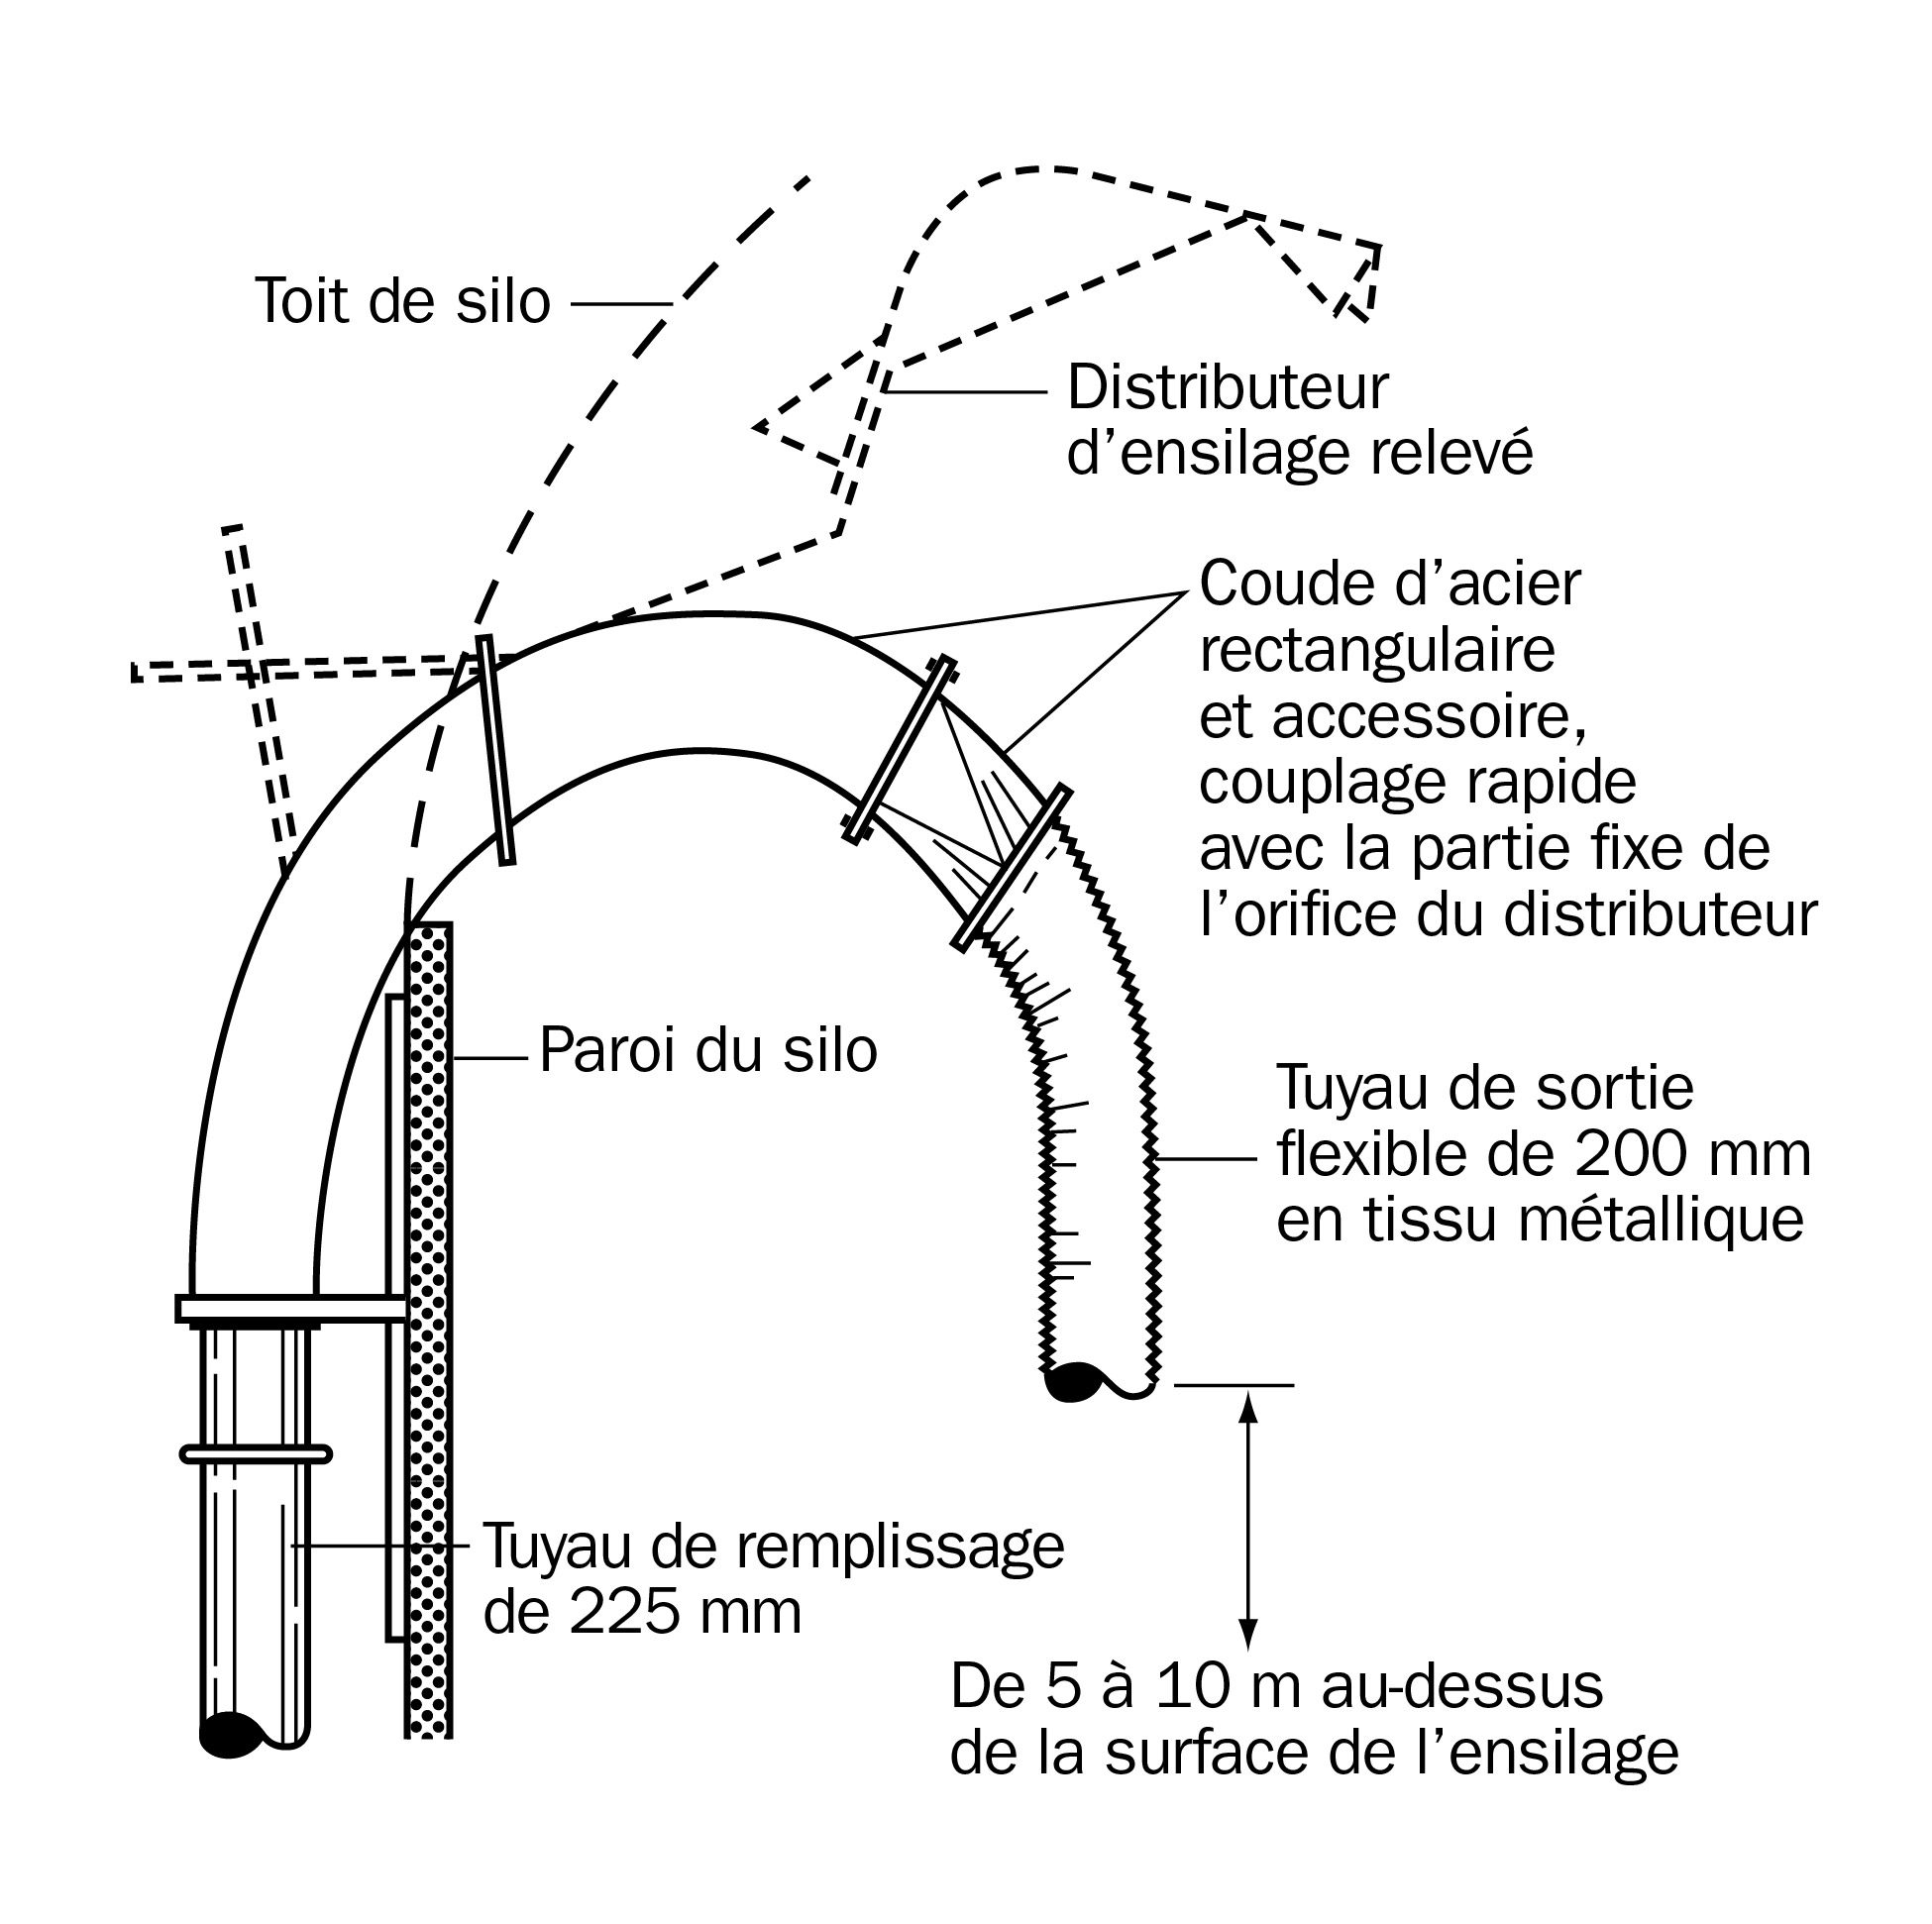 adaptateur suggéré pour la ventilation de silos dotés de distributeurs à ailettes